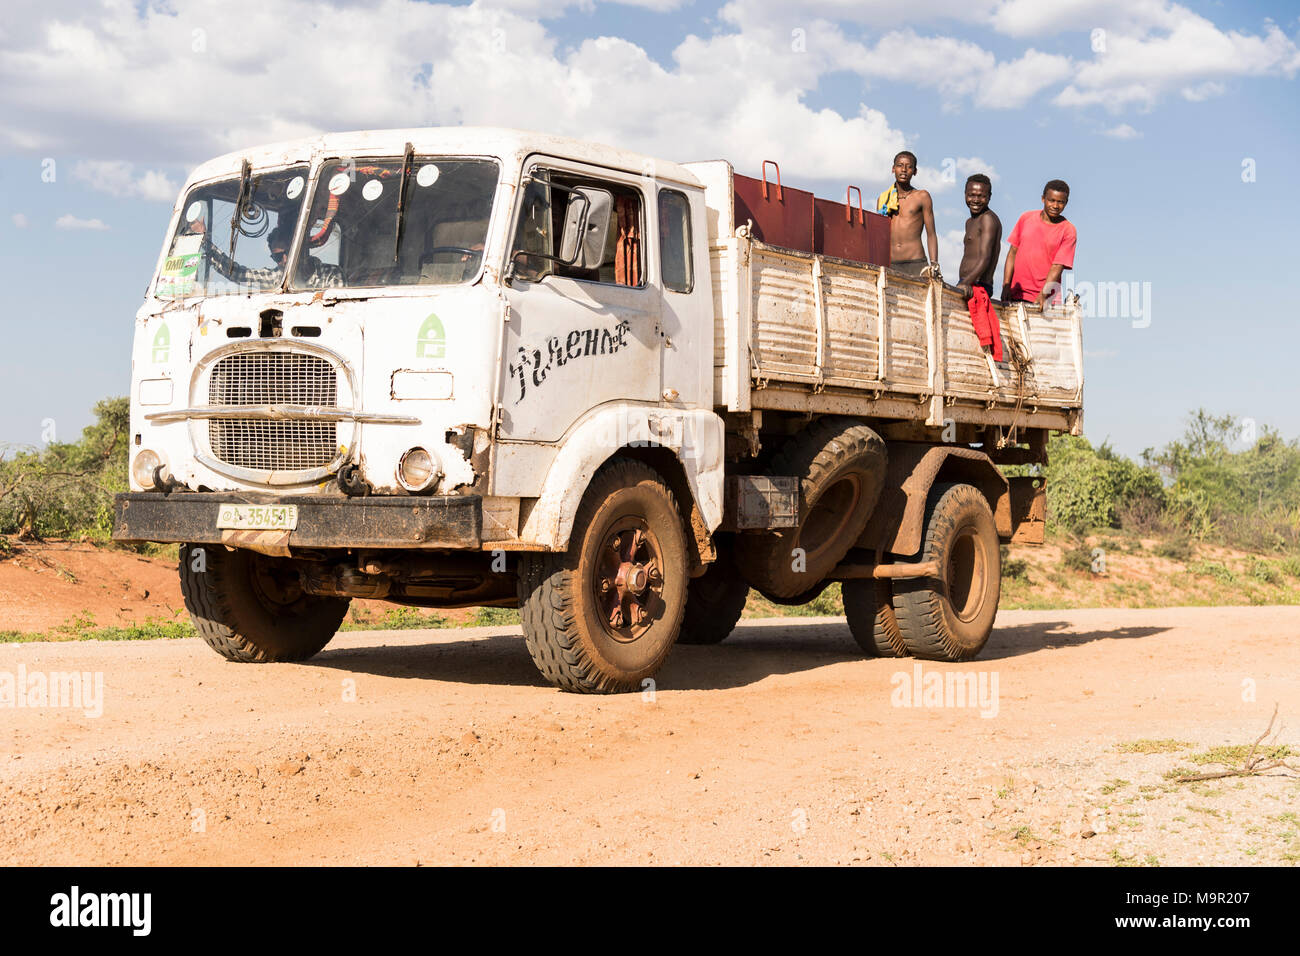 Carretilla con trabajadores agrícolas en el espacio de carga, Country Road cerca de Turmi, las naciones del Sur las Nacionalidades y los pueblos de la región, Etiopía Foto de stock